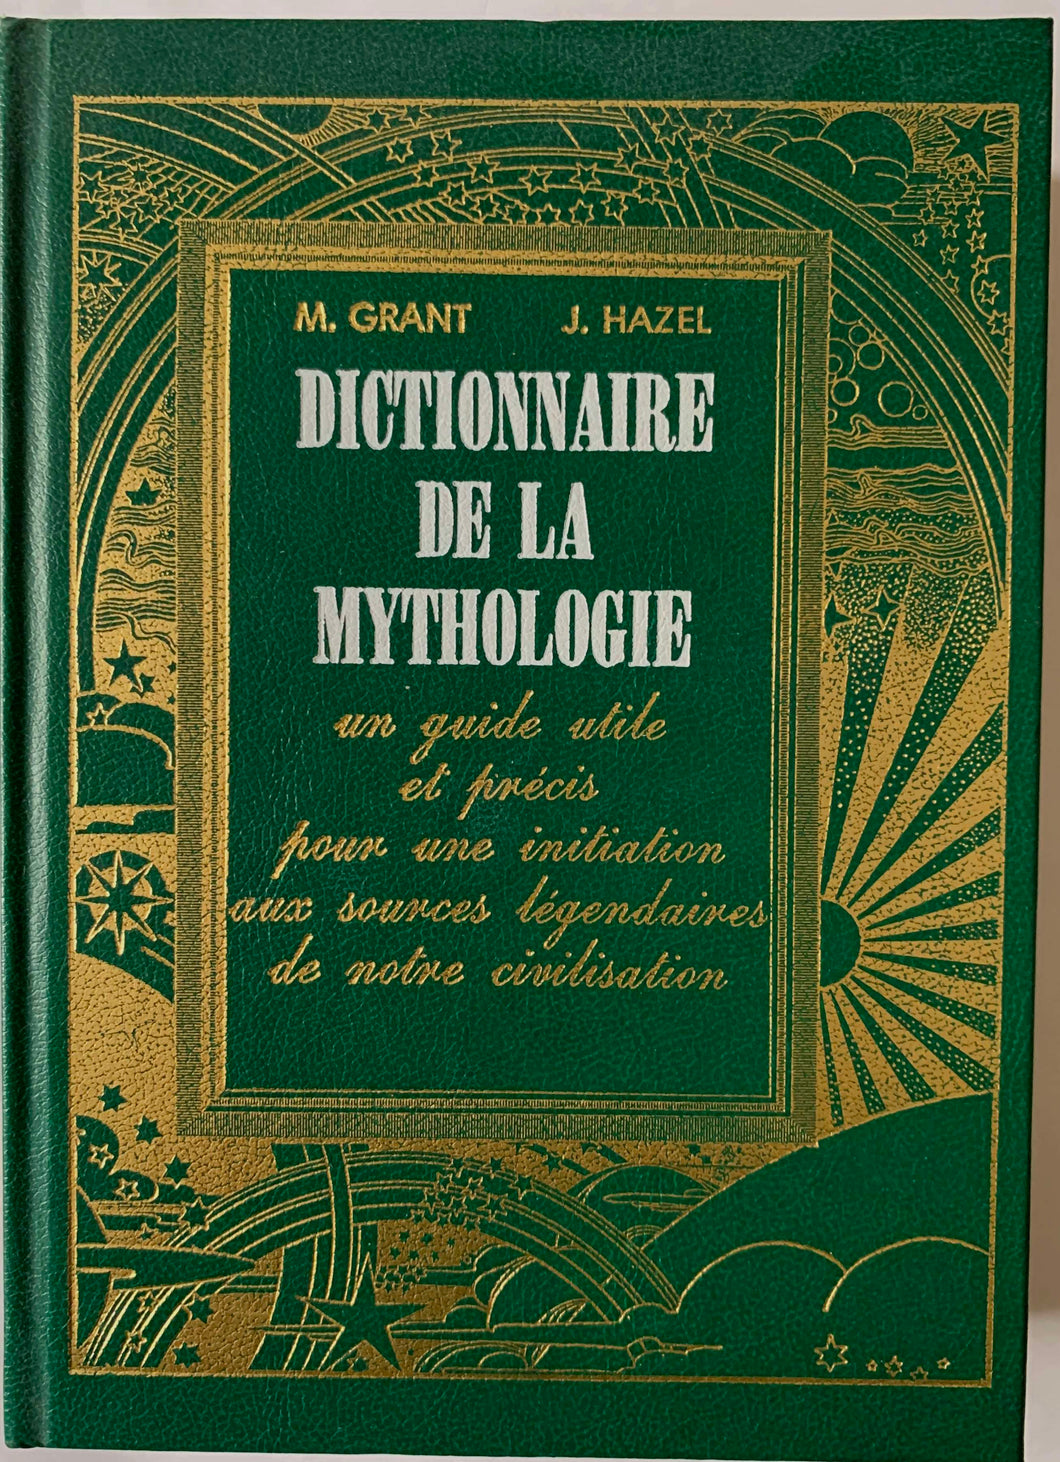 Dictionnaire de la Mythologie